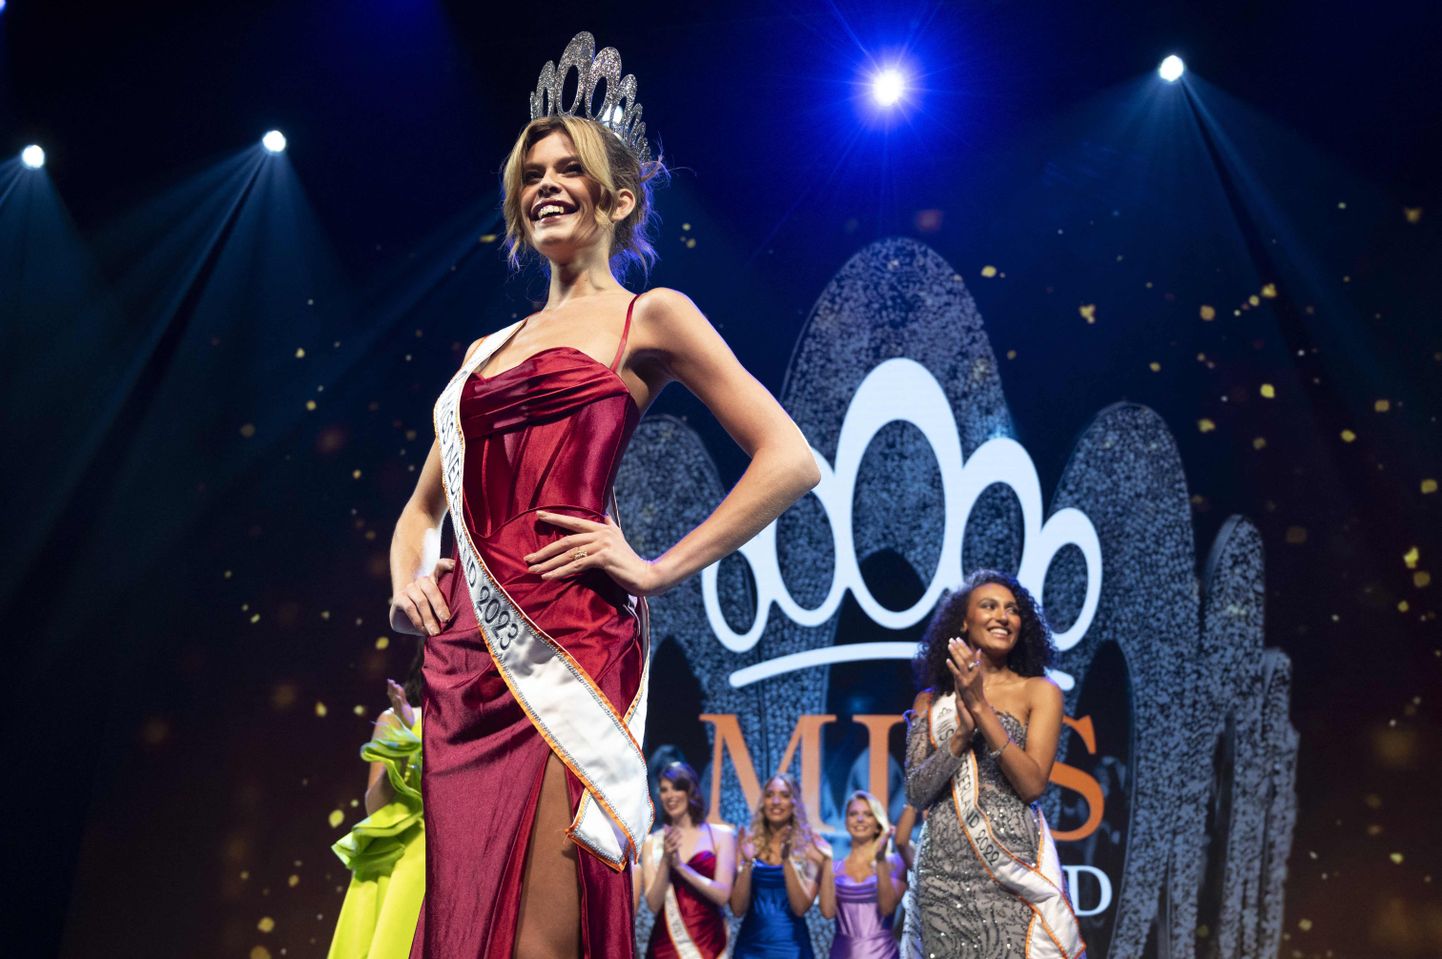 Rikkie Valerie Kollést sai esimene transseksuaal, kes on võitnud Miss Universe korraldatud konkursi.